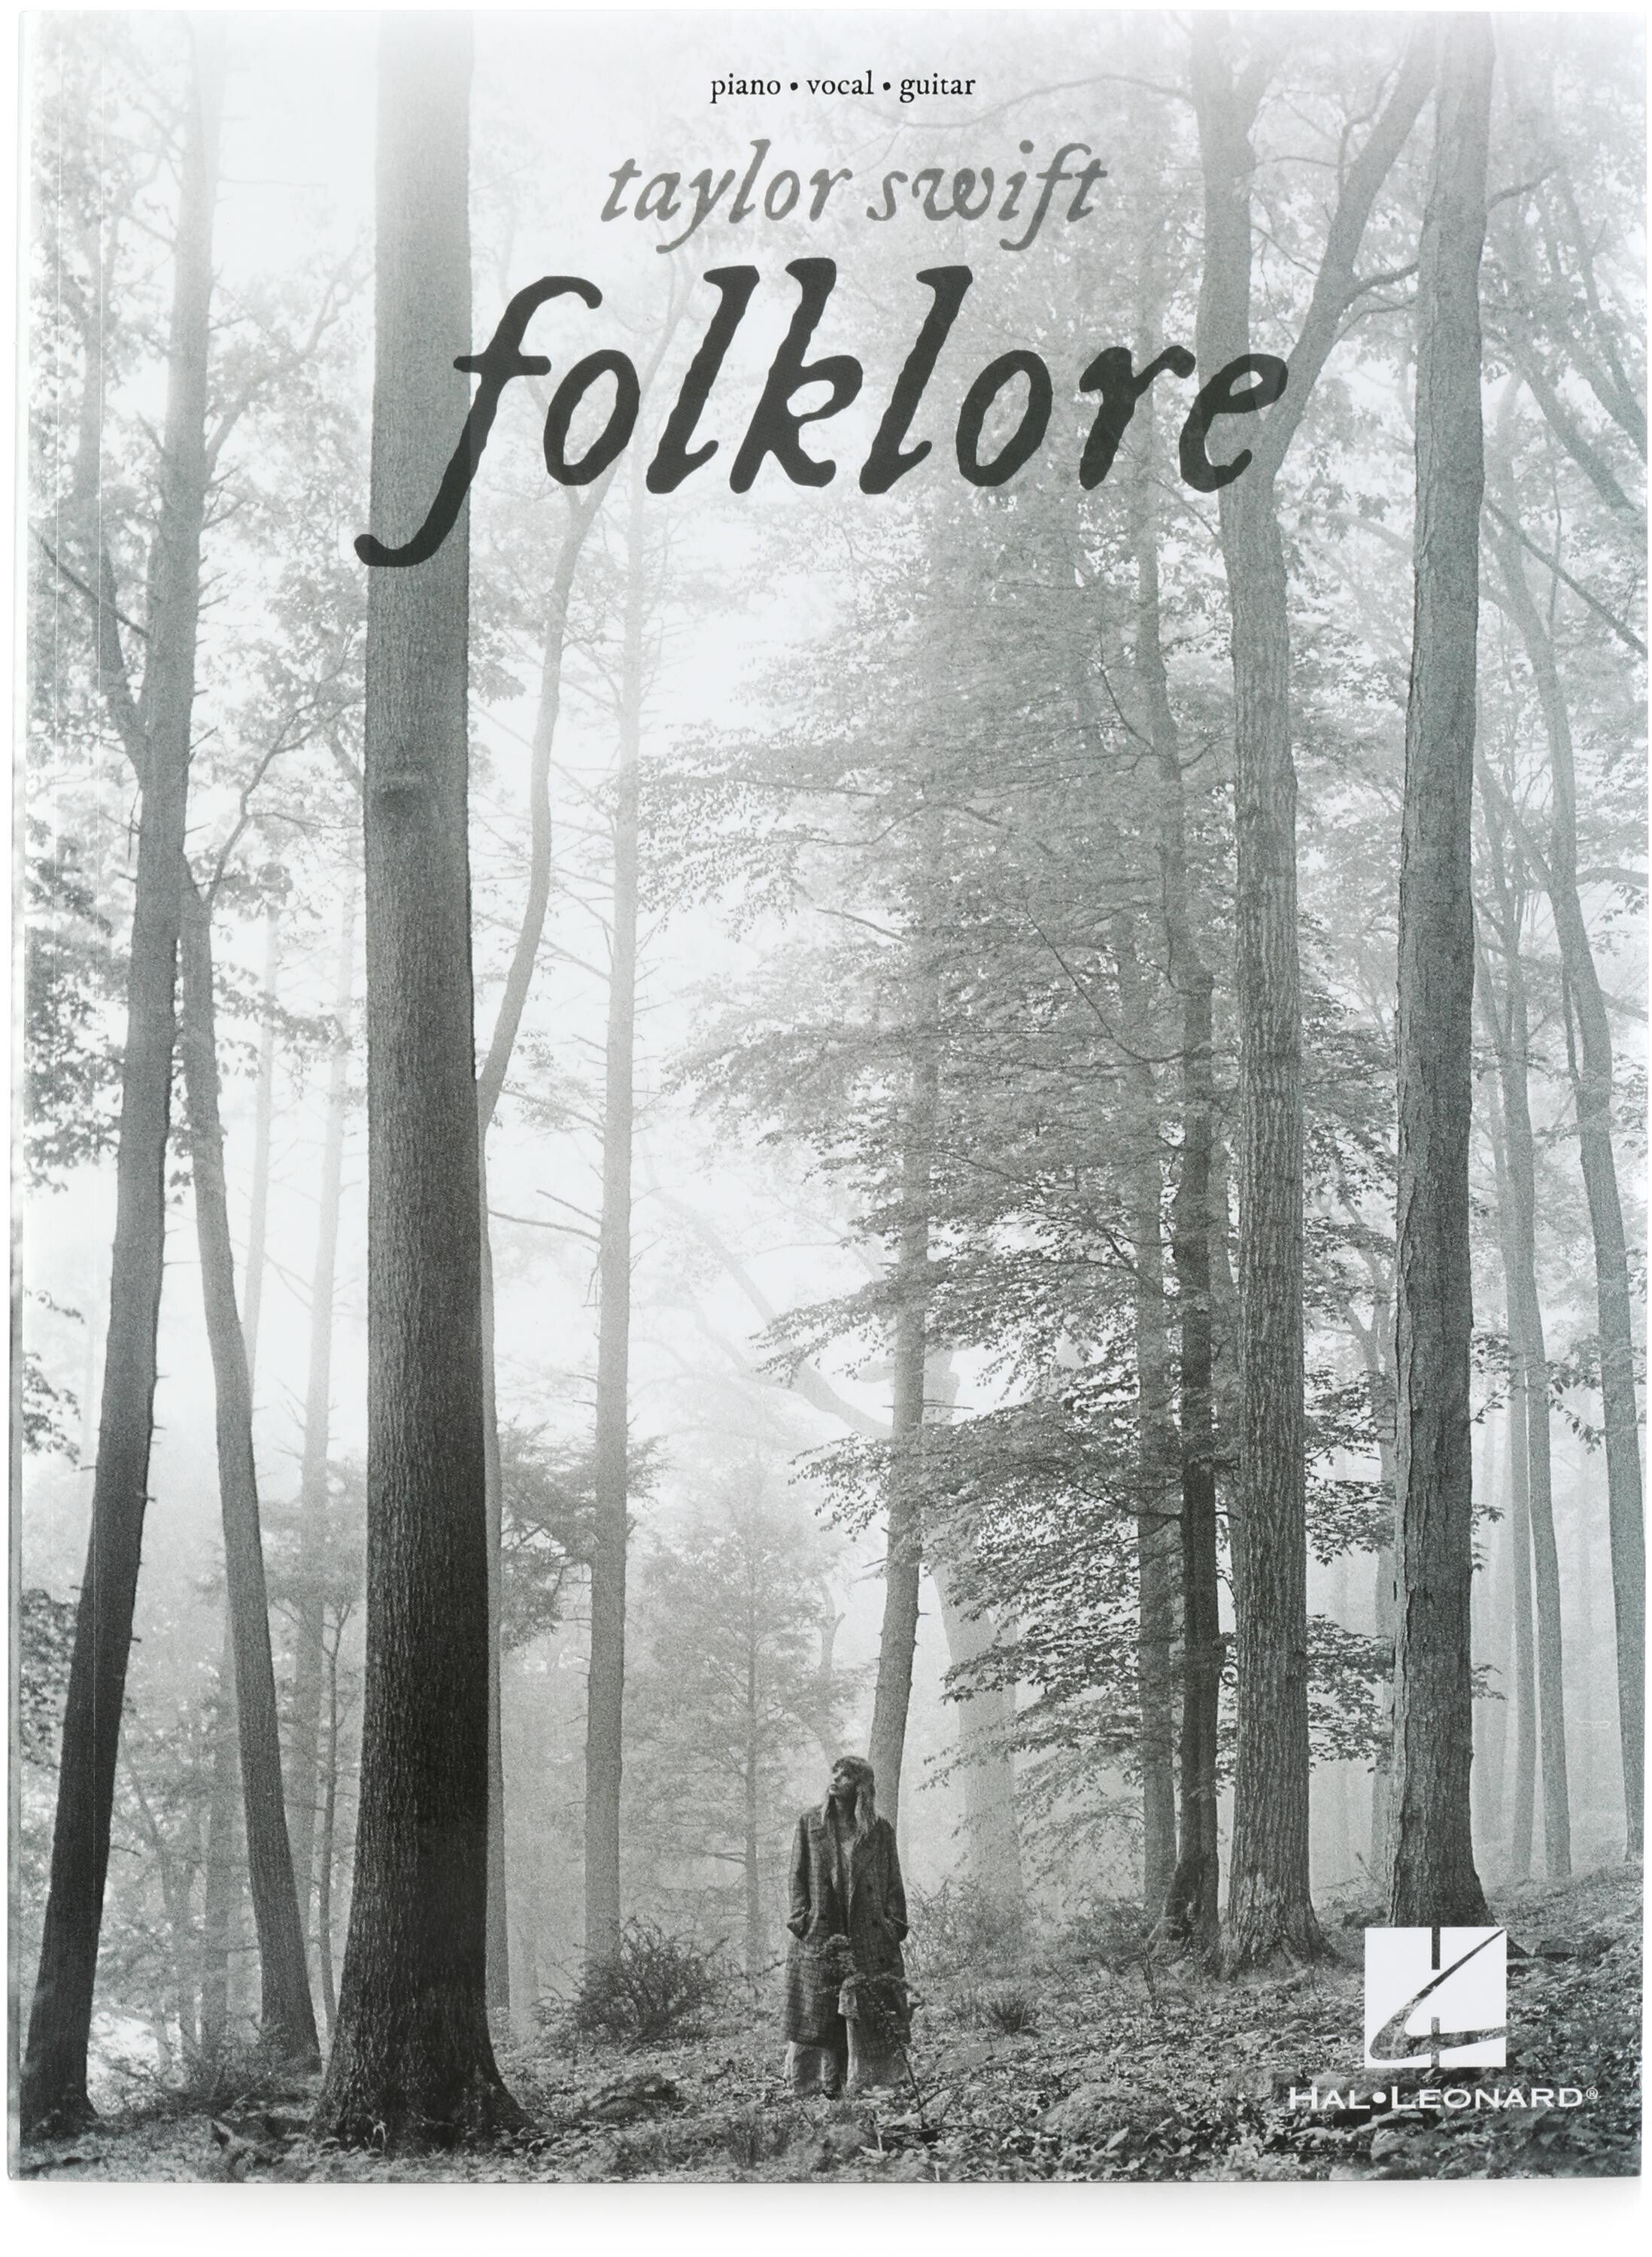 Bundled Item: Hal Leonard Taylor Swift Folklore Songbook